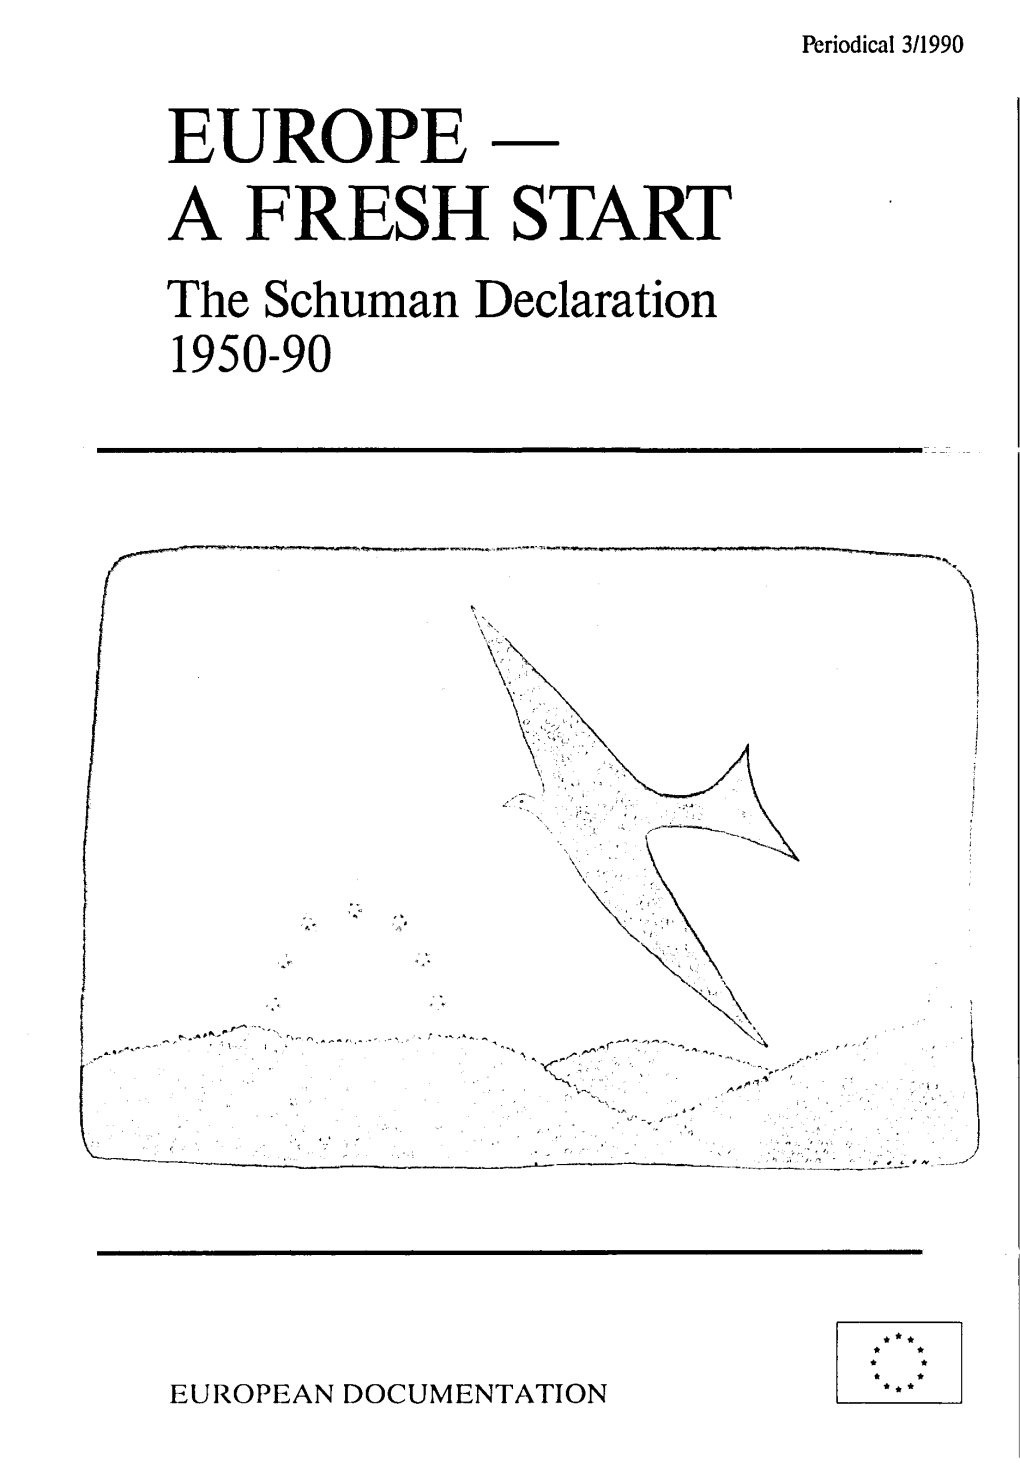 EUROPE- a FRESH START the Schuman Declaration 1950-90